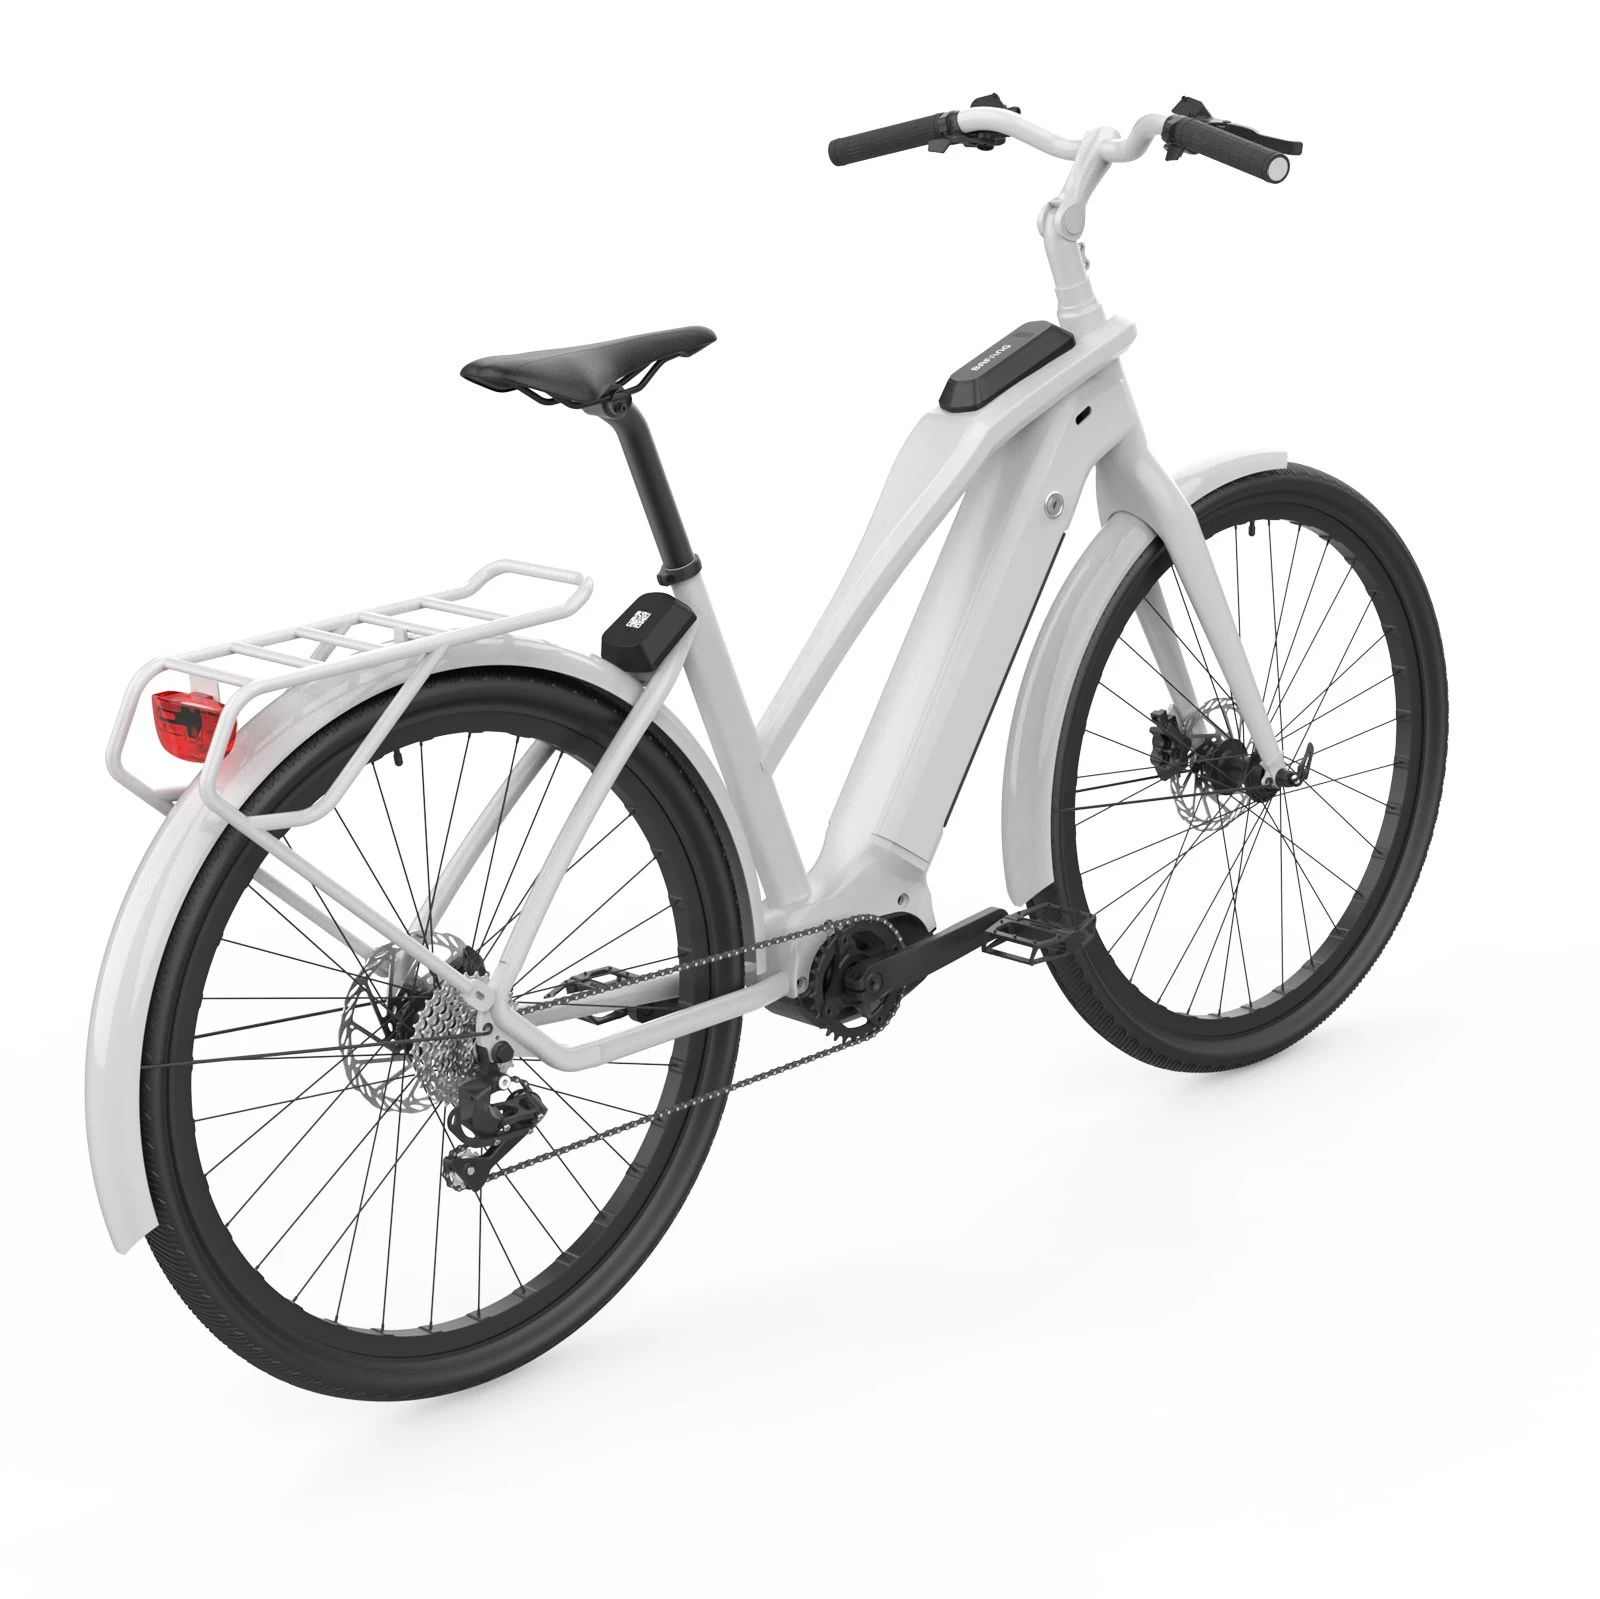 Dispositif IoT M136 pour système de partage de vélos vélos de location déverrouillage et verrouillage QR avec système de suivi GPS